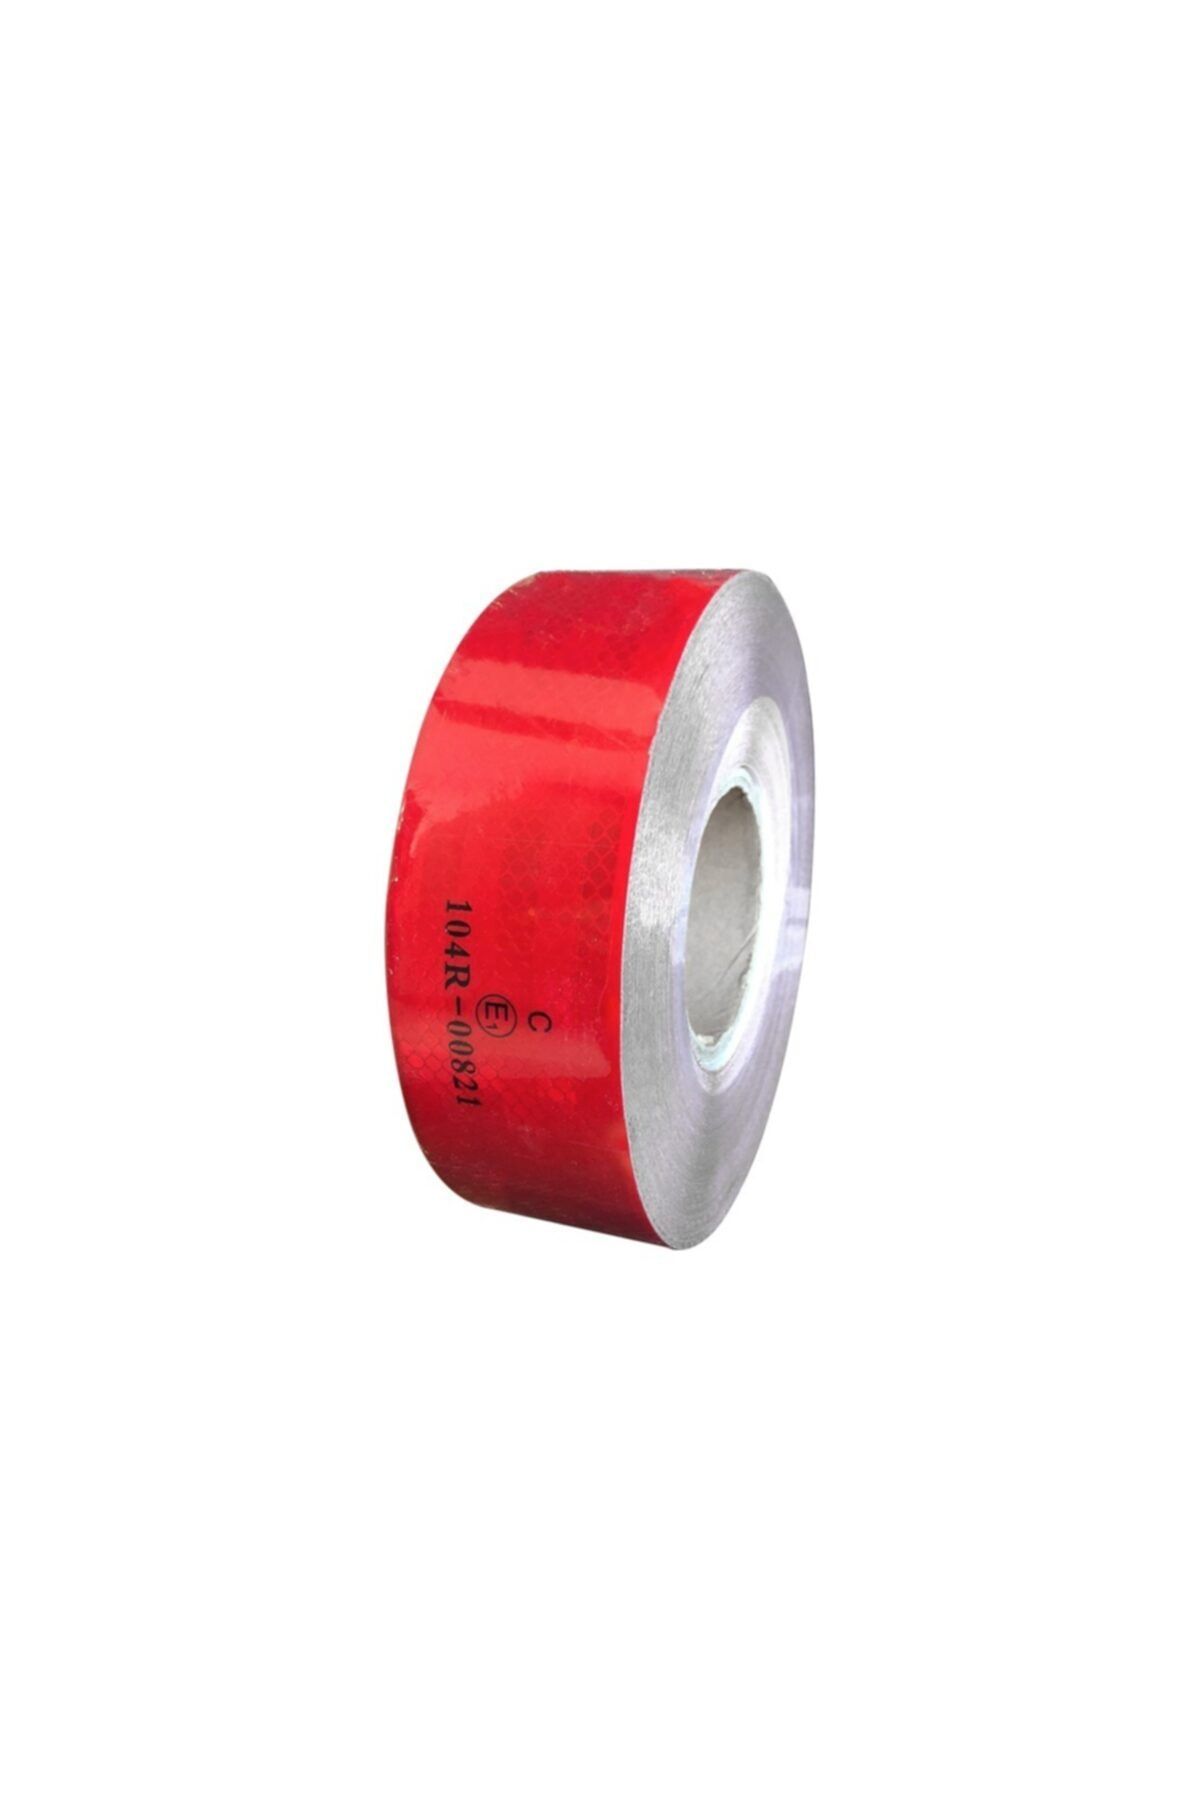 UYSAL HİDROLİK Reflektör Fosforlu Şerit Bant, Tüvtürk Onaylı 5,5 Cmx50 Metre Kırmızı